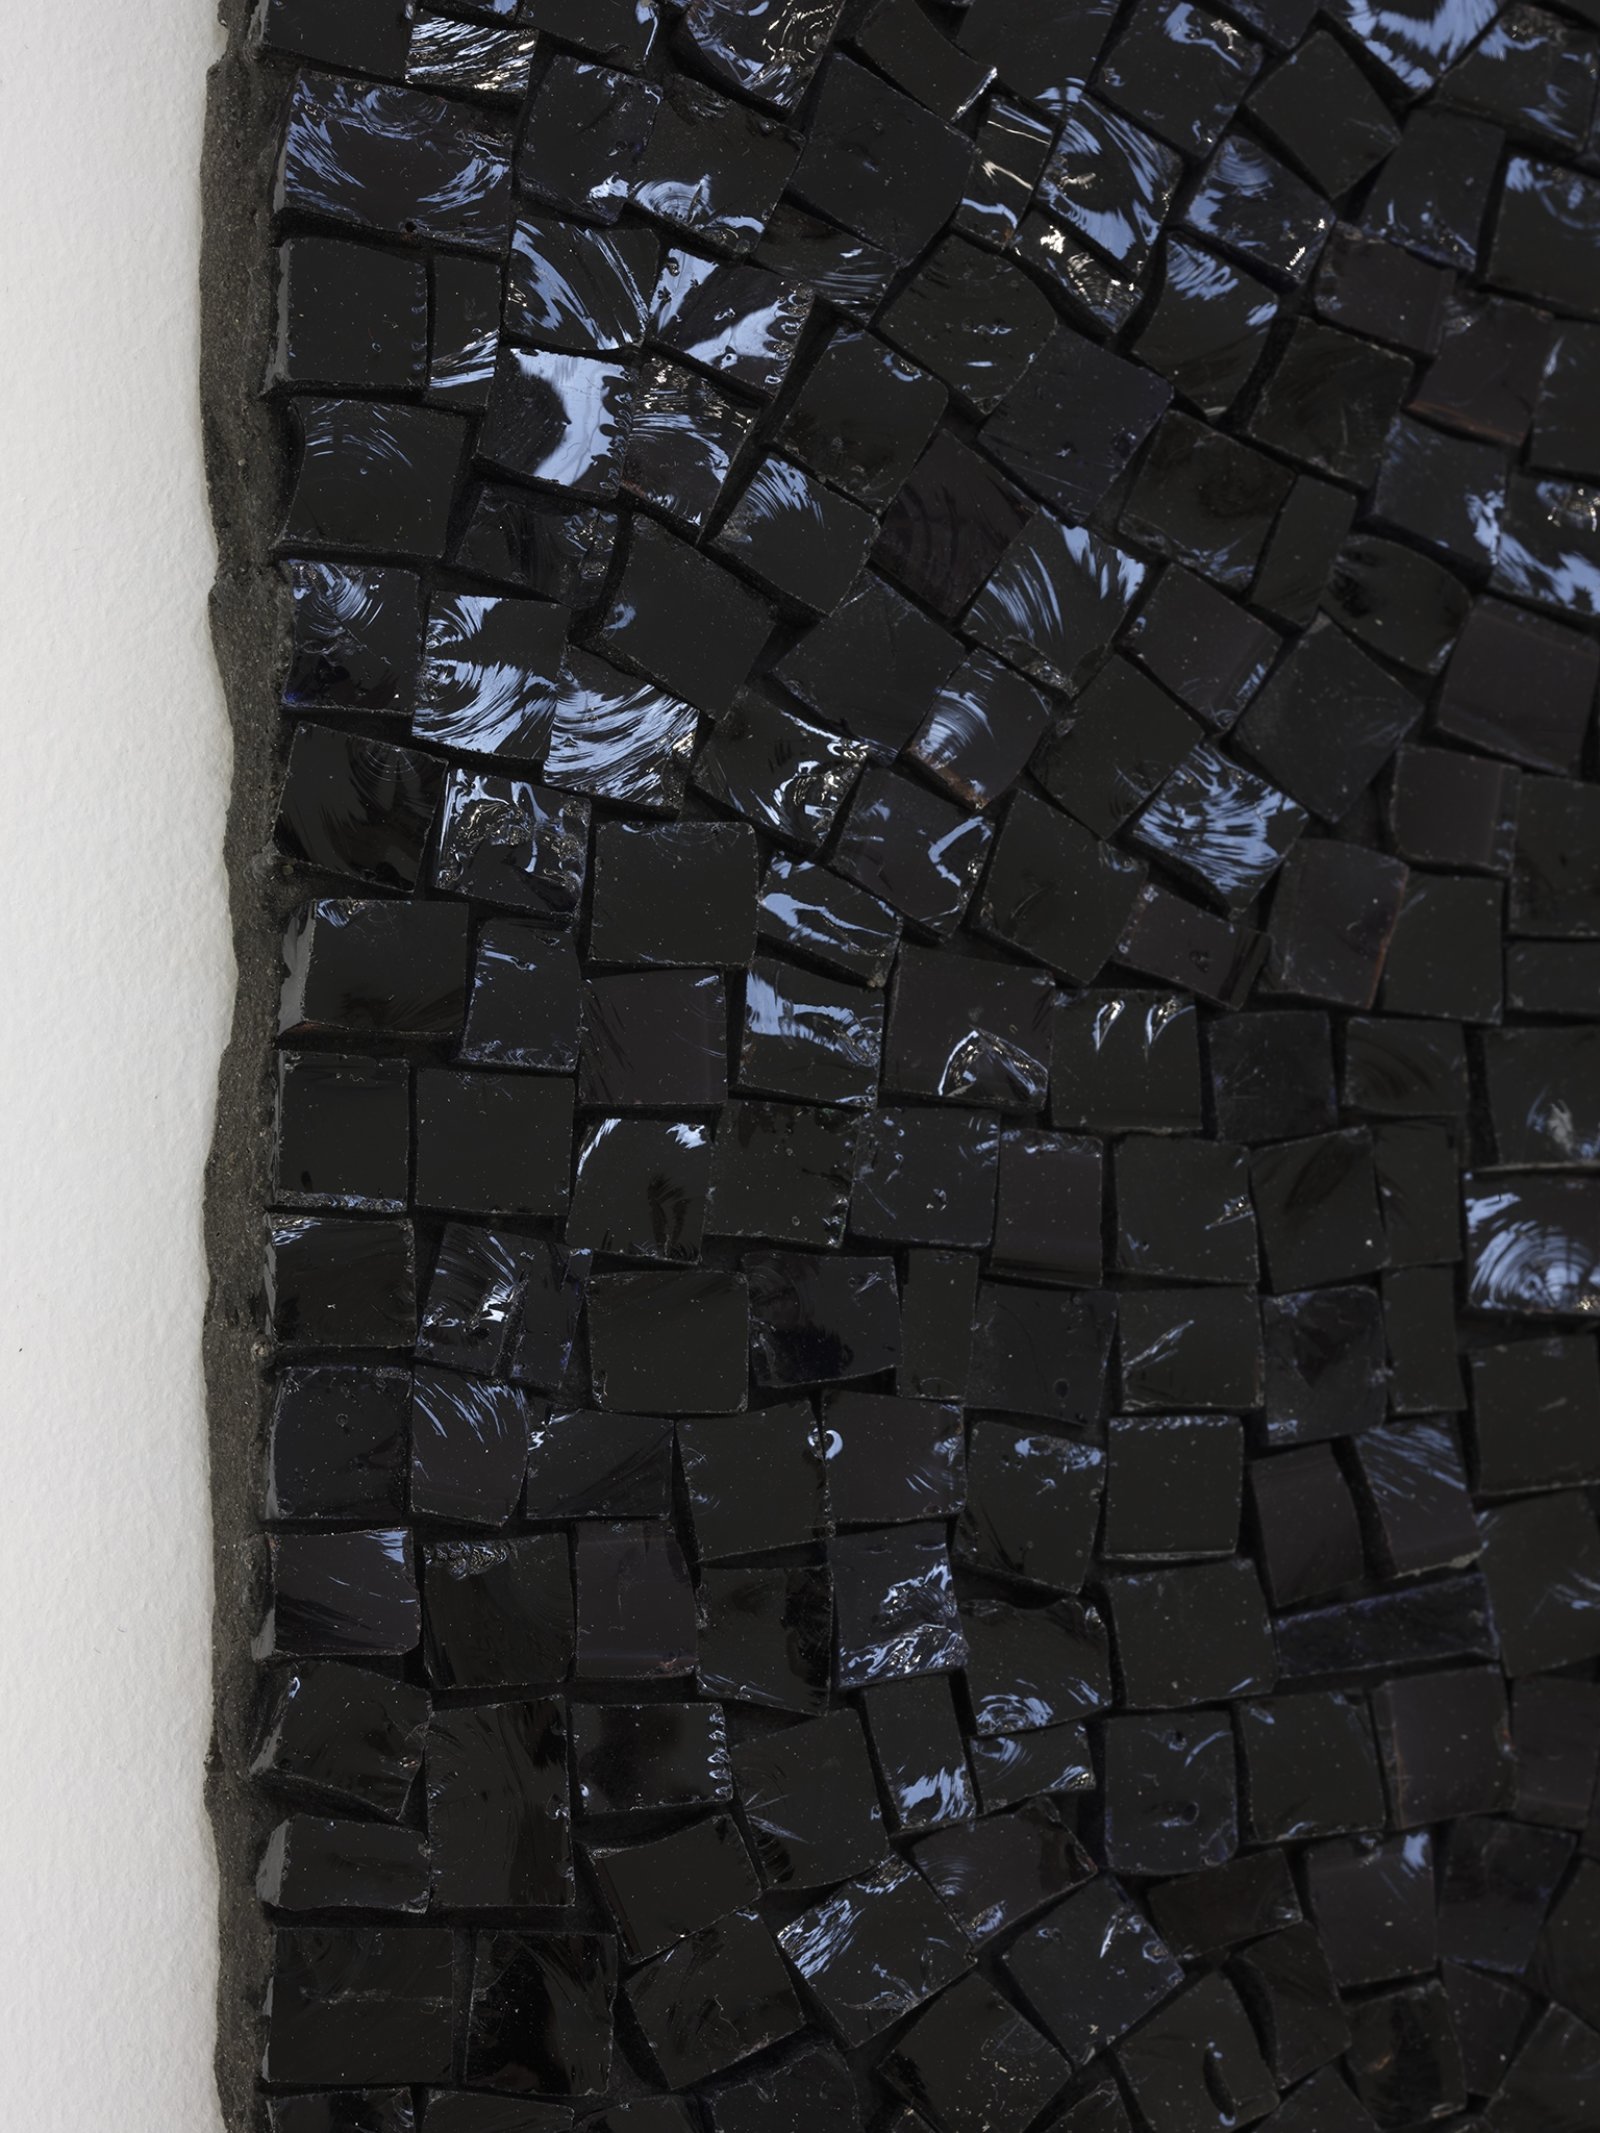 Janice Kerbel, Pool (Full L, black) (detail), 2019, glass smalti mosaic, 33 x 20 in. (83 x 50 cm)